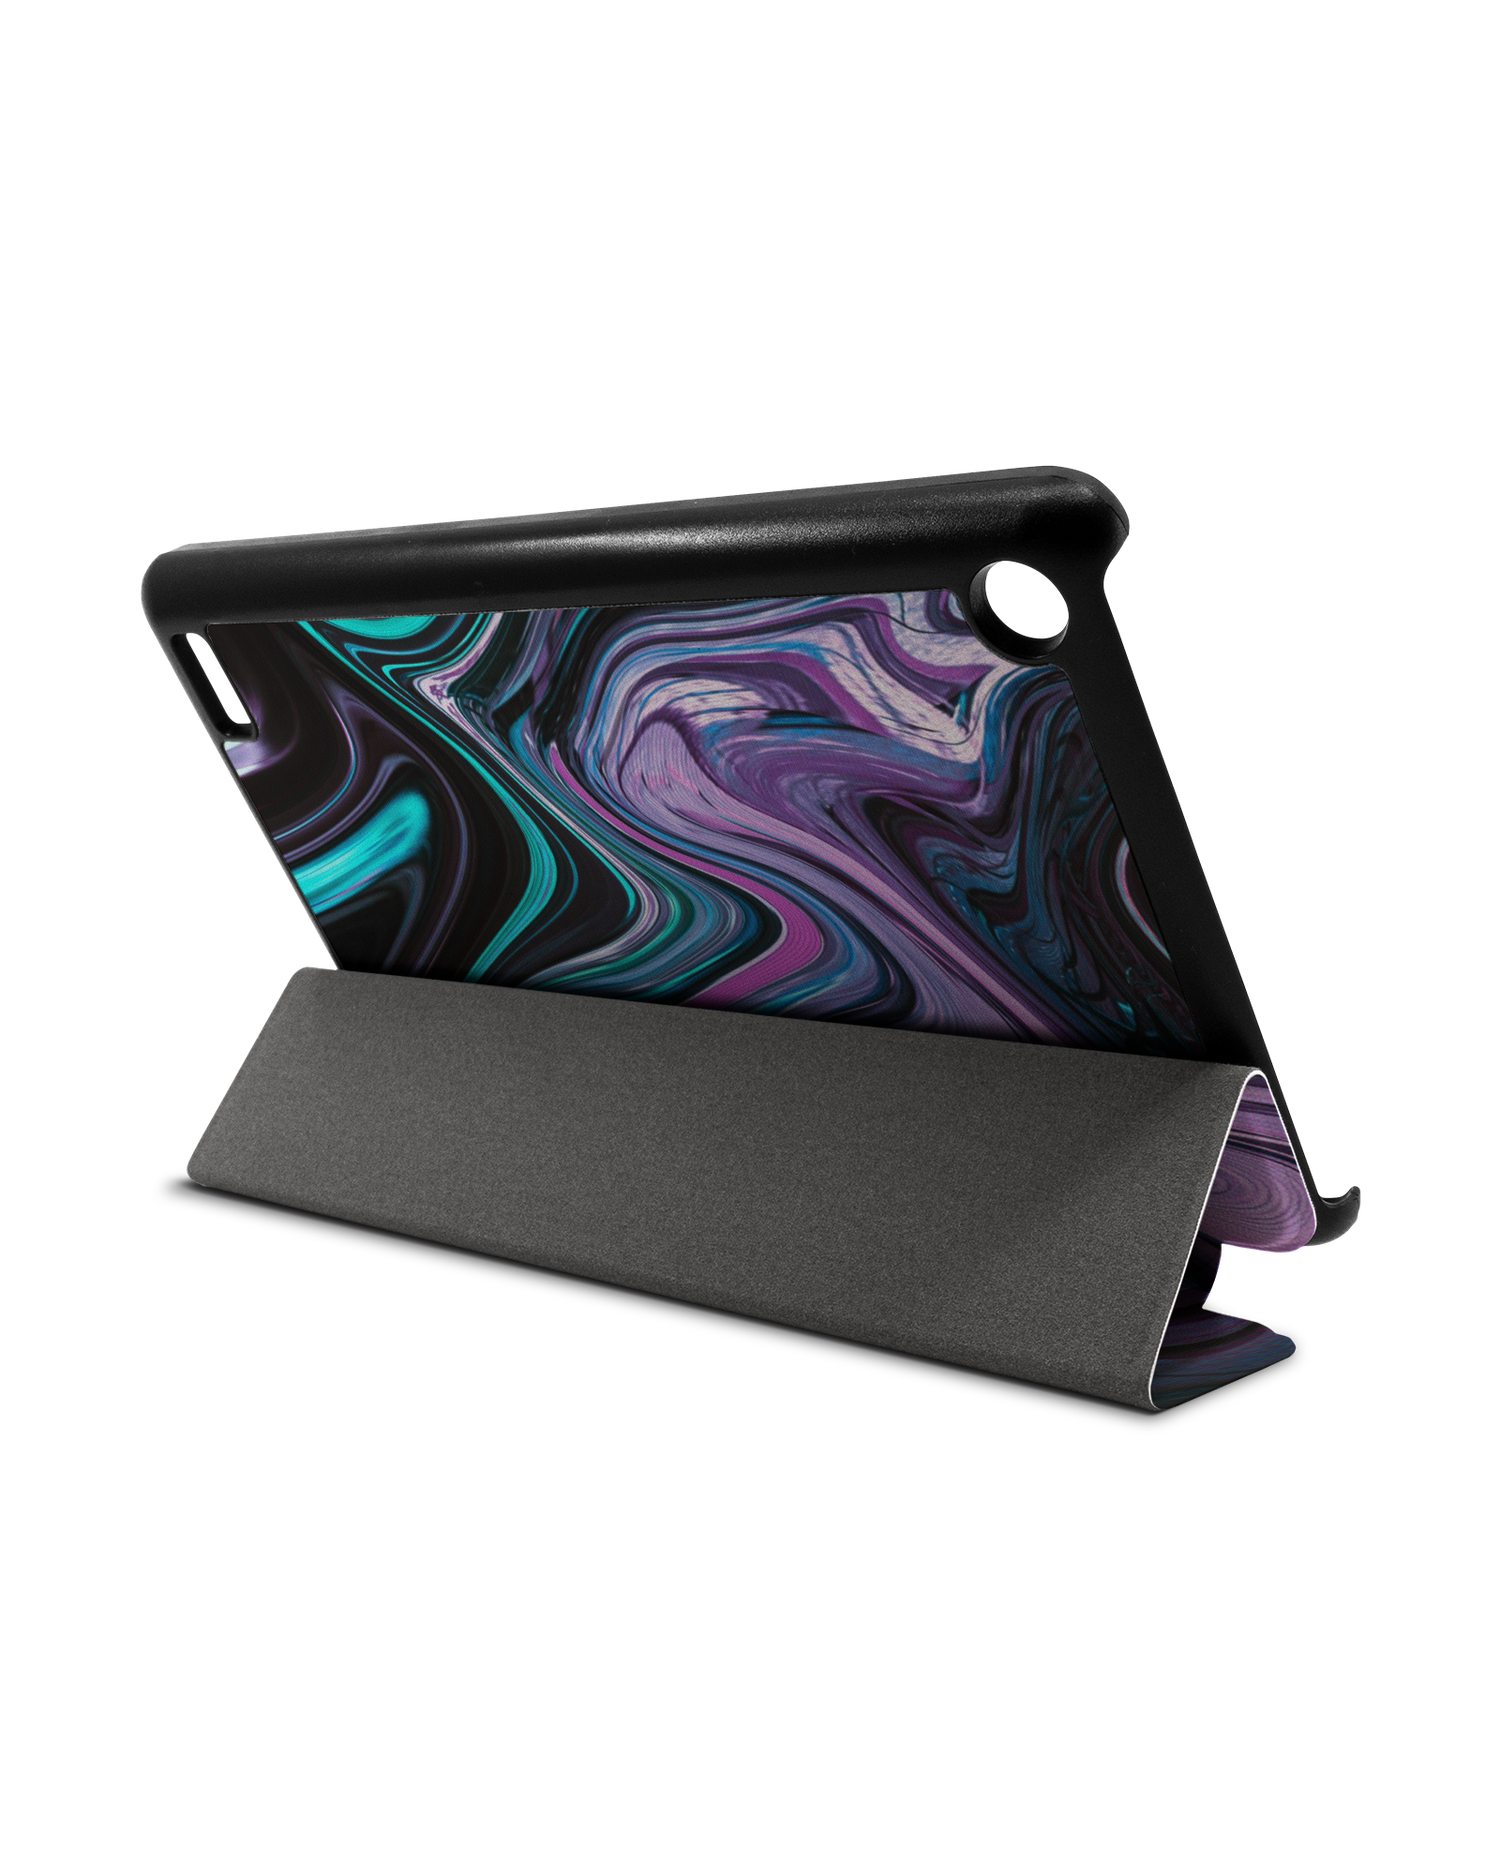 Digital Swirl Tablet Smart Case für Amazon Fire 7: Aufgestellt im Querformat